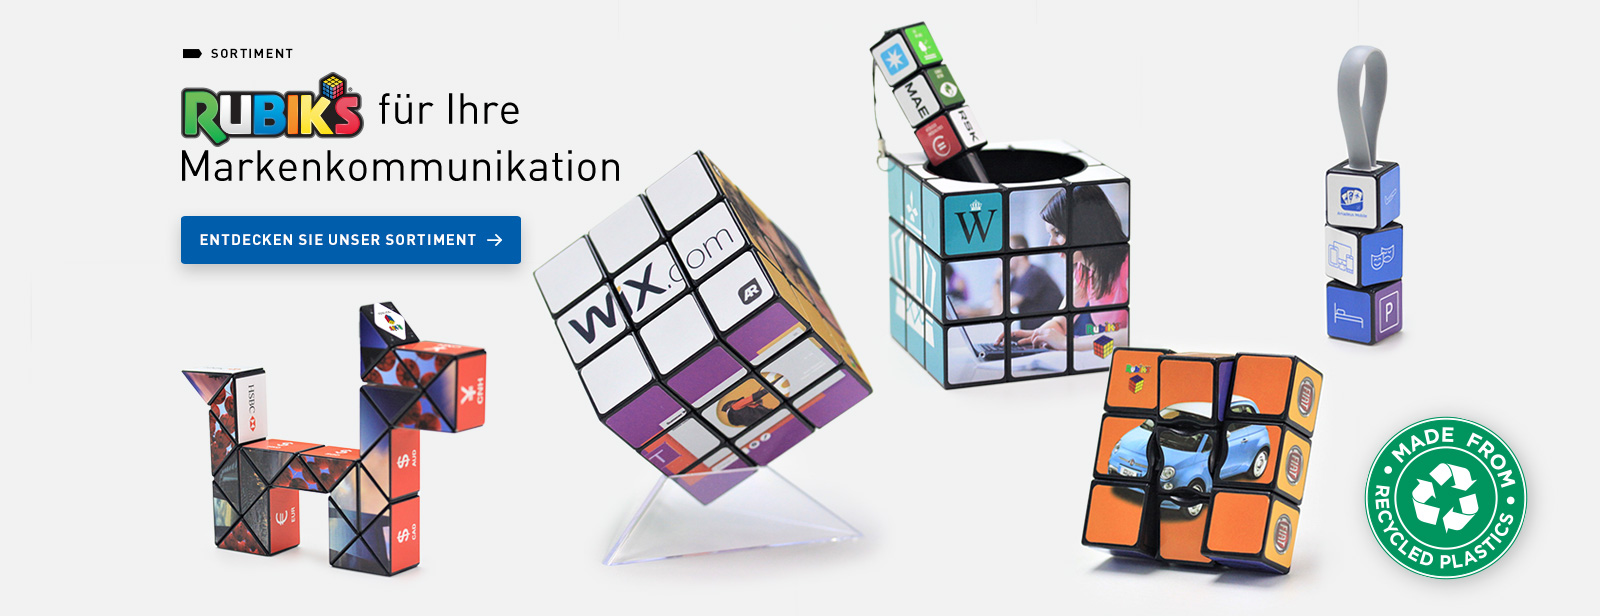 Rubik's für Ihre Markenkommunikation